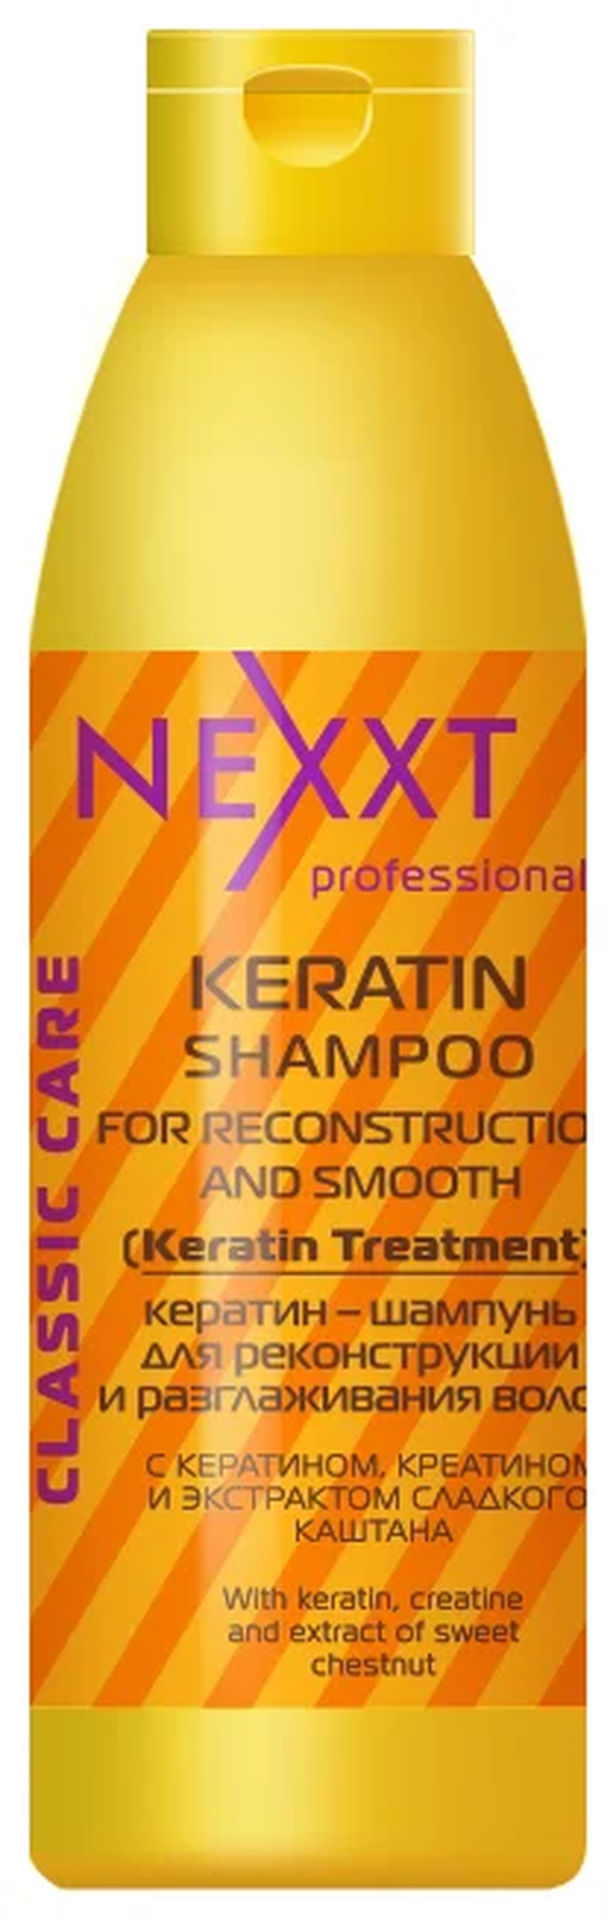 Кератин-шампунь для 
реконструкции и разглаживания волос